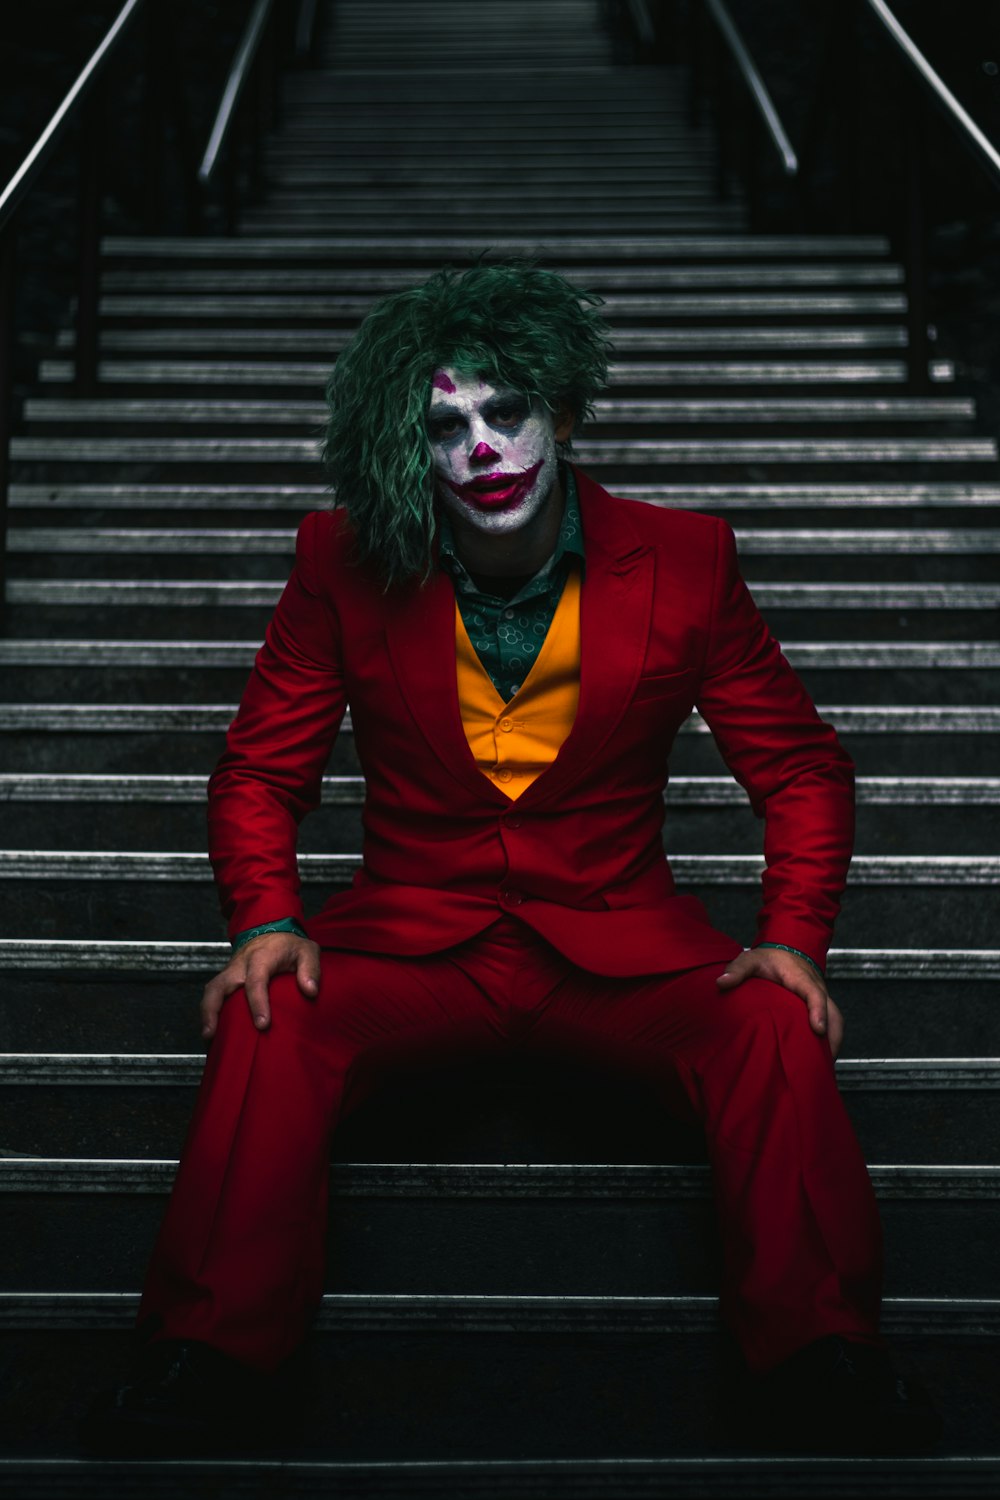 500+ Joker Images | Download Free Pictures On Unsplash